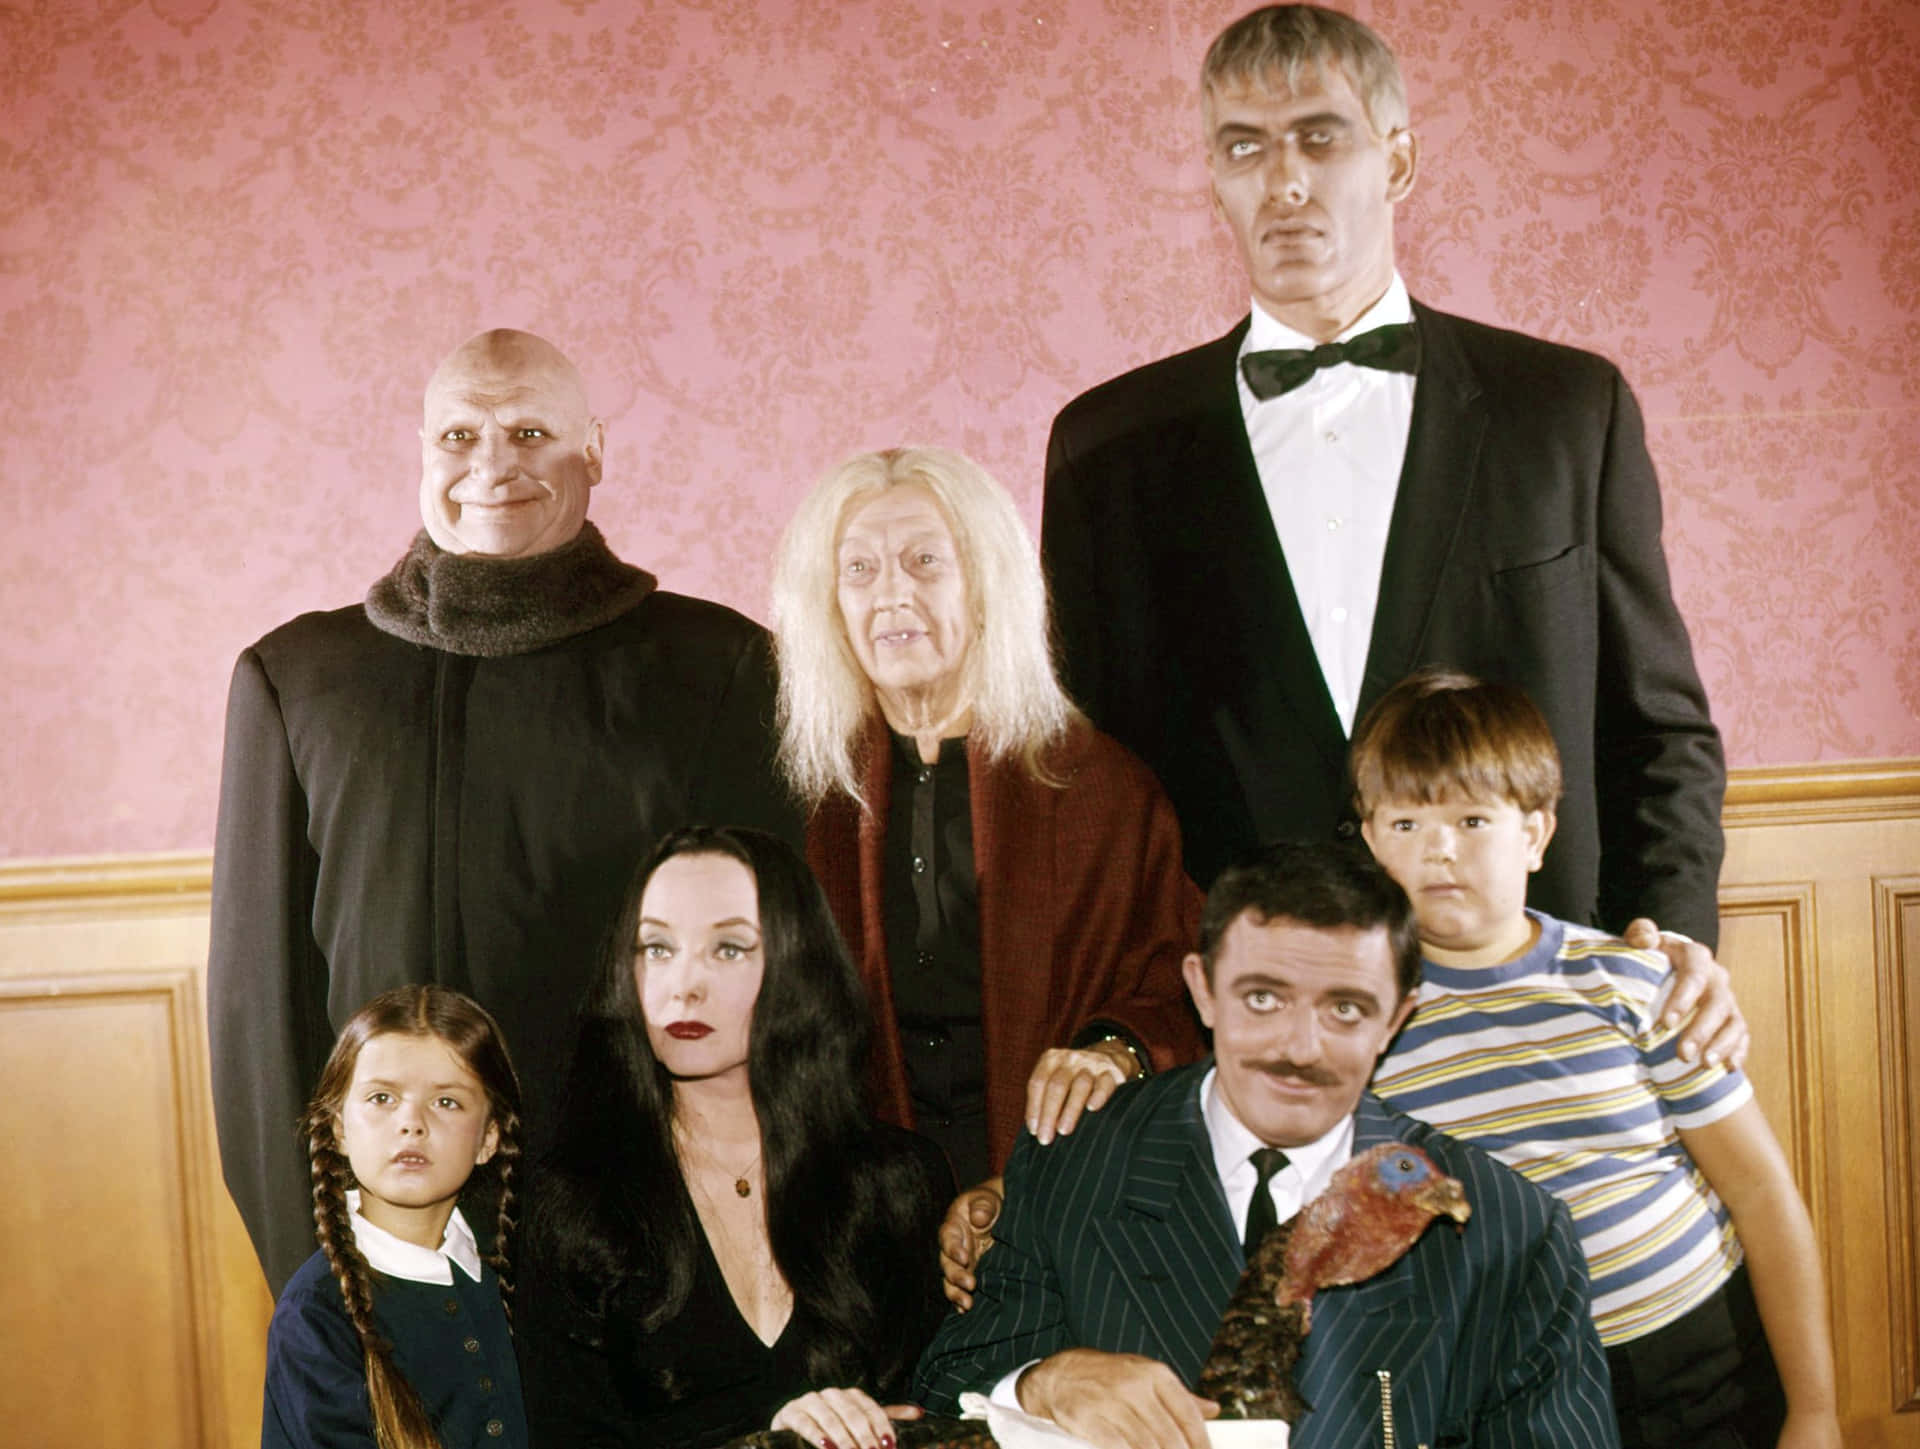 The Addams Family in Spooky Splendor